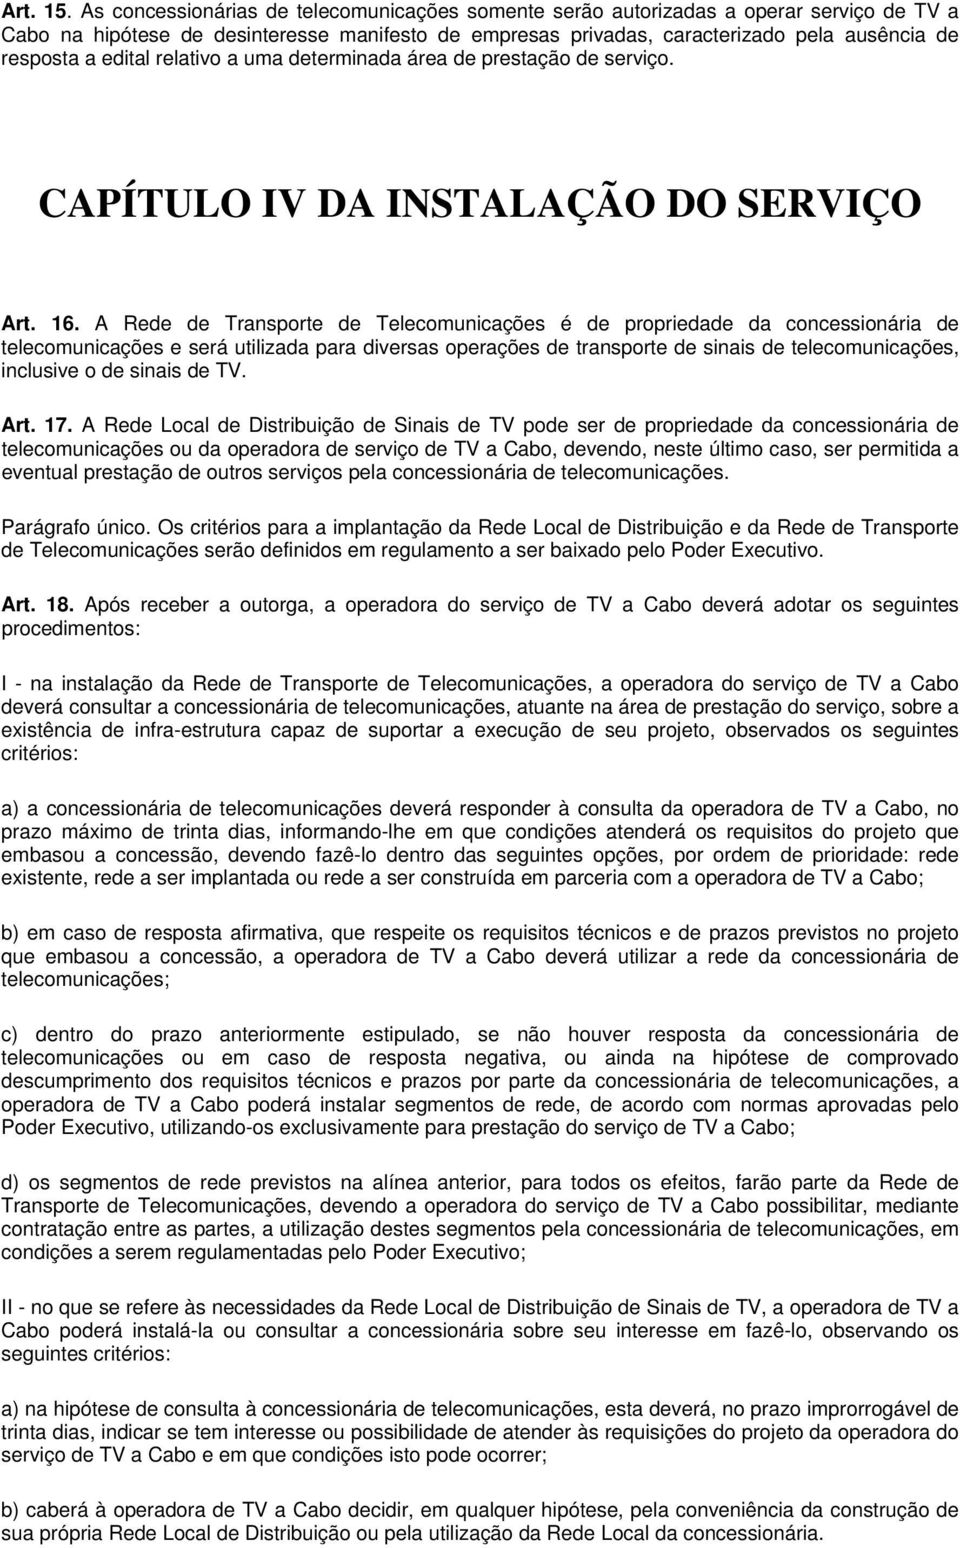 edital relativo a uma determinada área de prestação de serviço. CAPÍTULO IV DA INSTALAÇÃO DO SERVIÇO Art. 16.